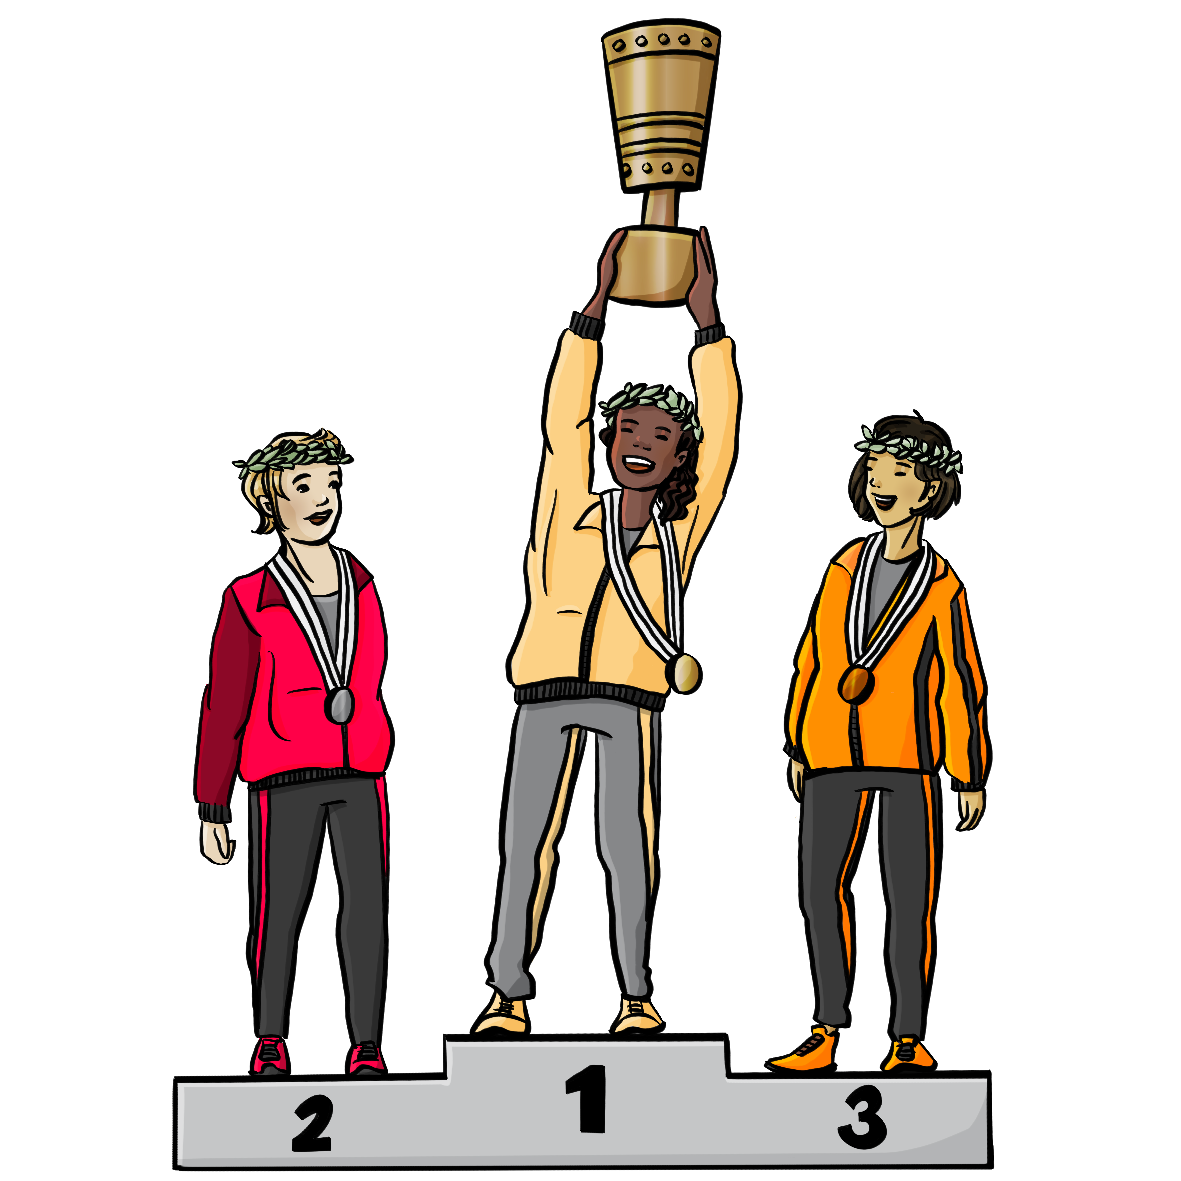 Drei Frauen mit verschiedenen Hautfarben stehen auf einem Siegertreppchen. Sie tragen Trainingsanzüge, Kränze auf dem Kopf und Medaillen um den Hals. Die Frau in der Mitte hält einen Pokal in die Höhe.